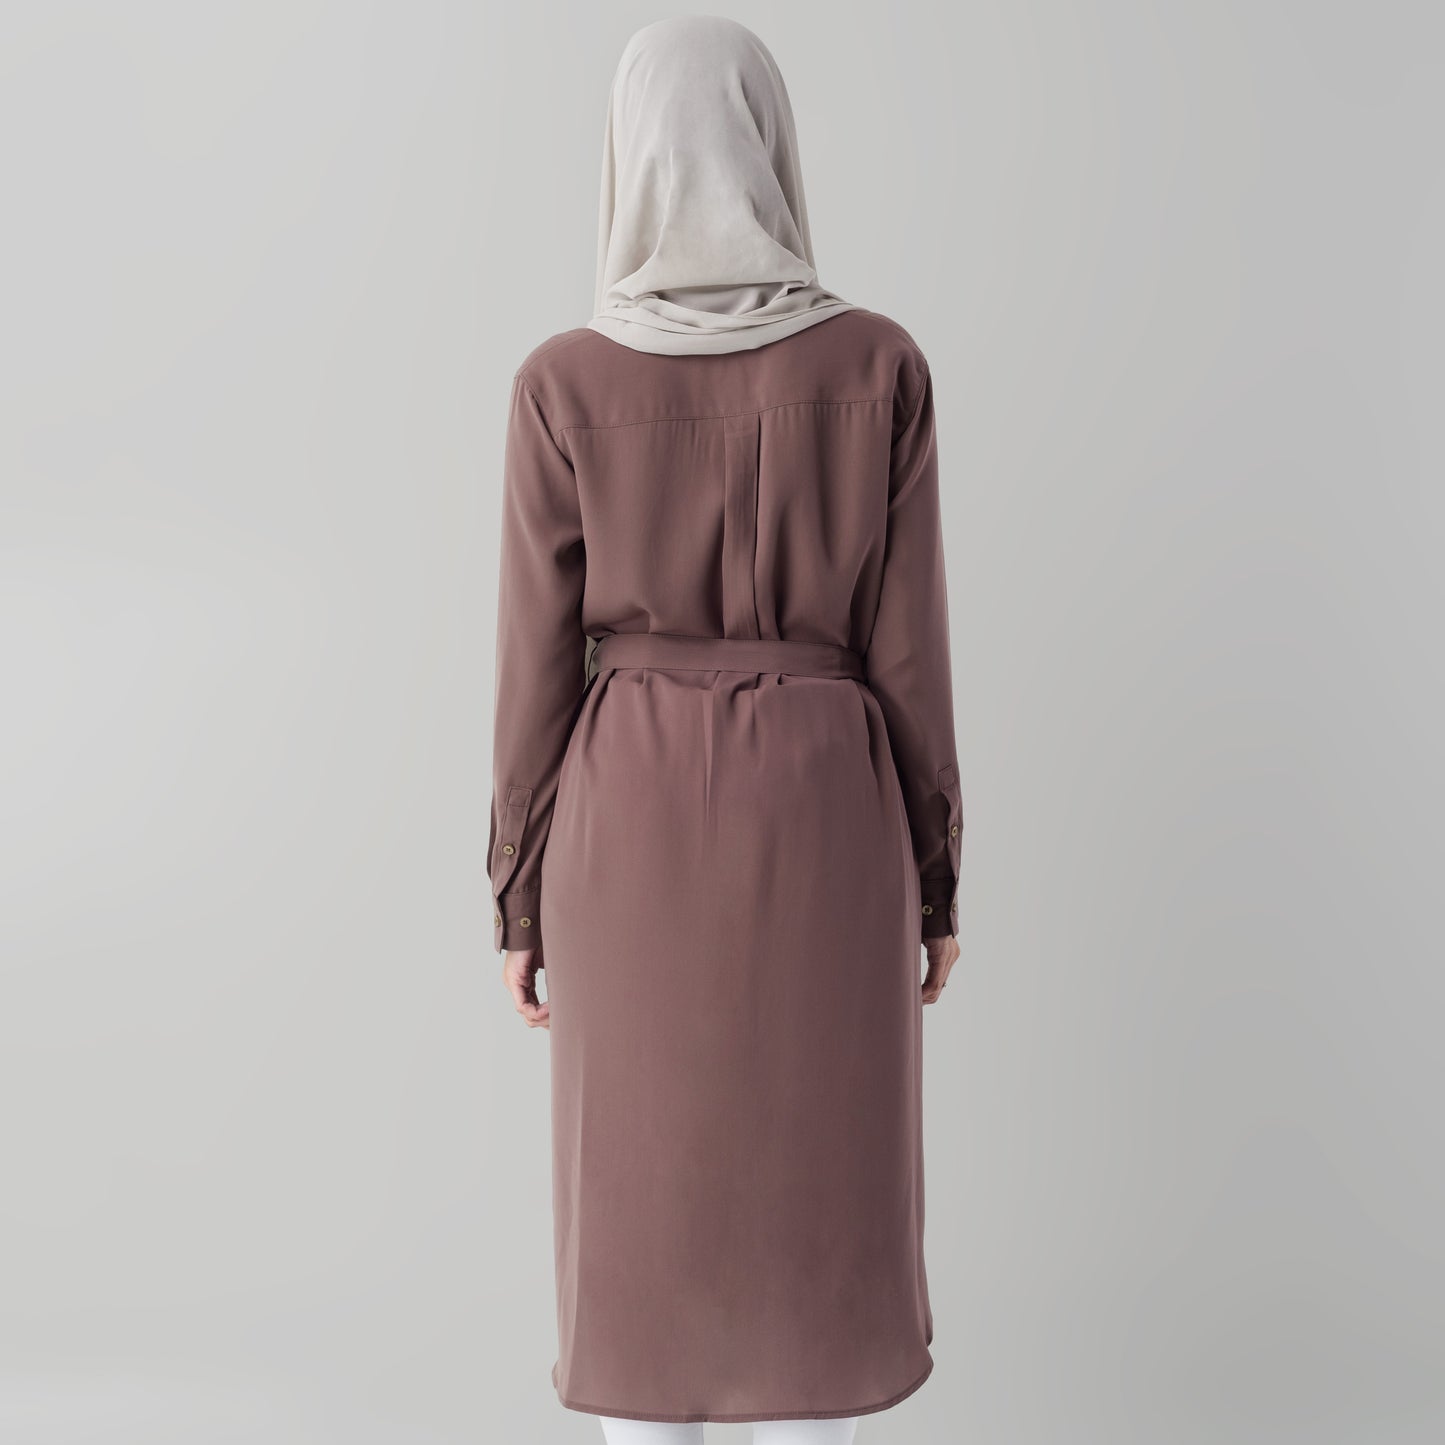 Benhill "Yena" Dress Tunik Wanita Rose Taupe 875-3980B